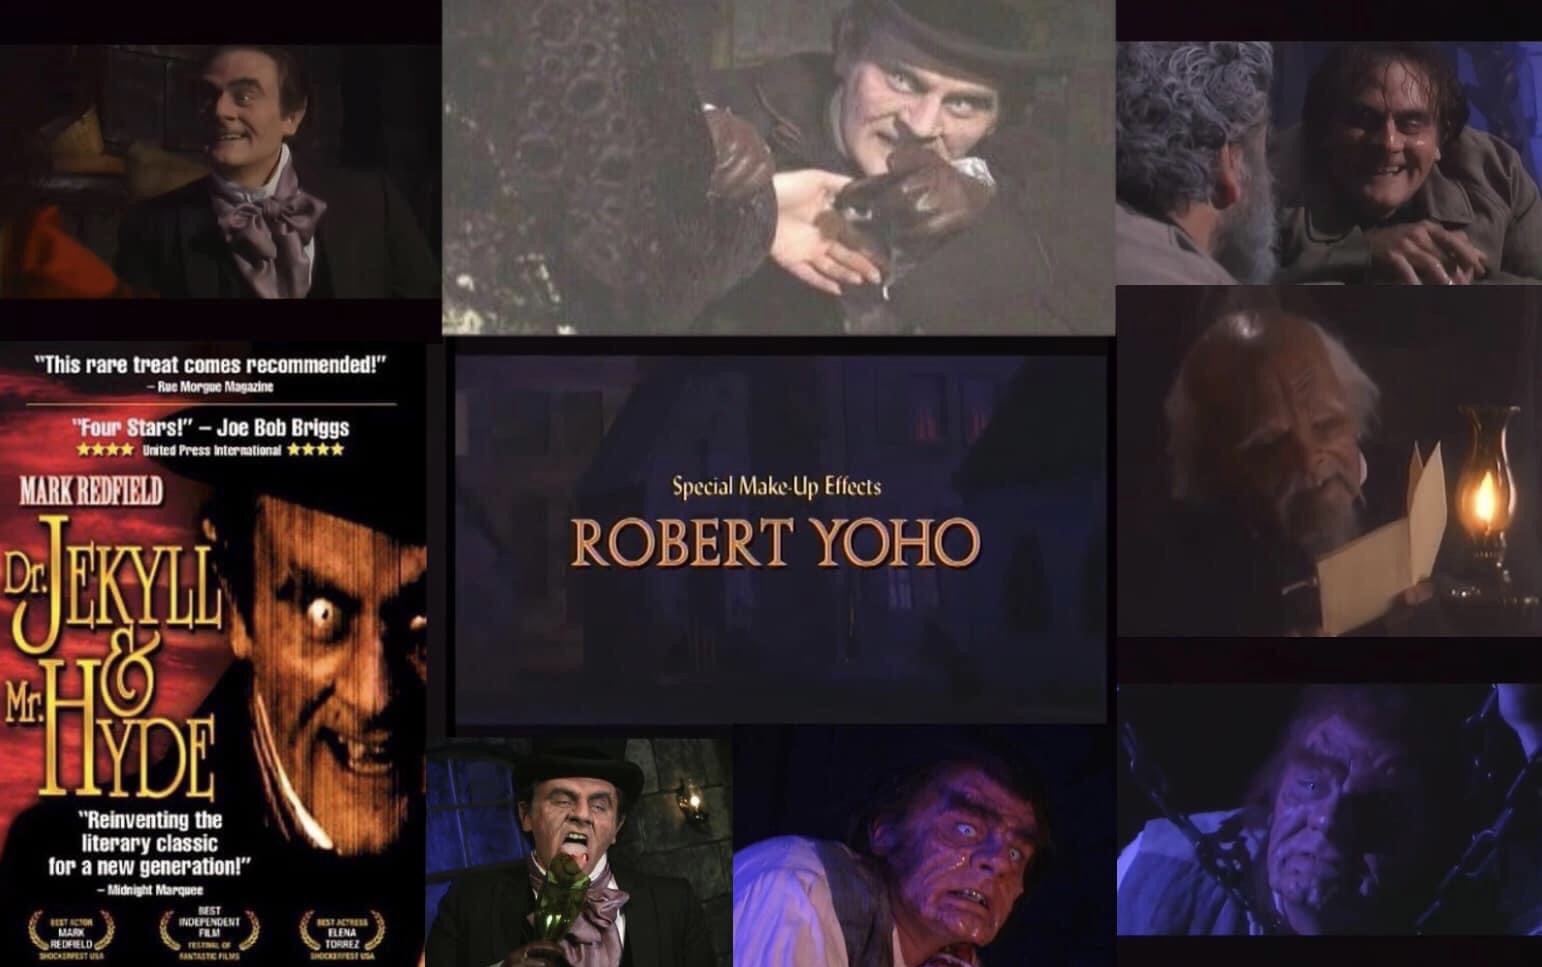 Rest In Peace Robert Yoho